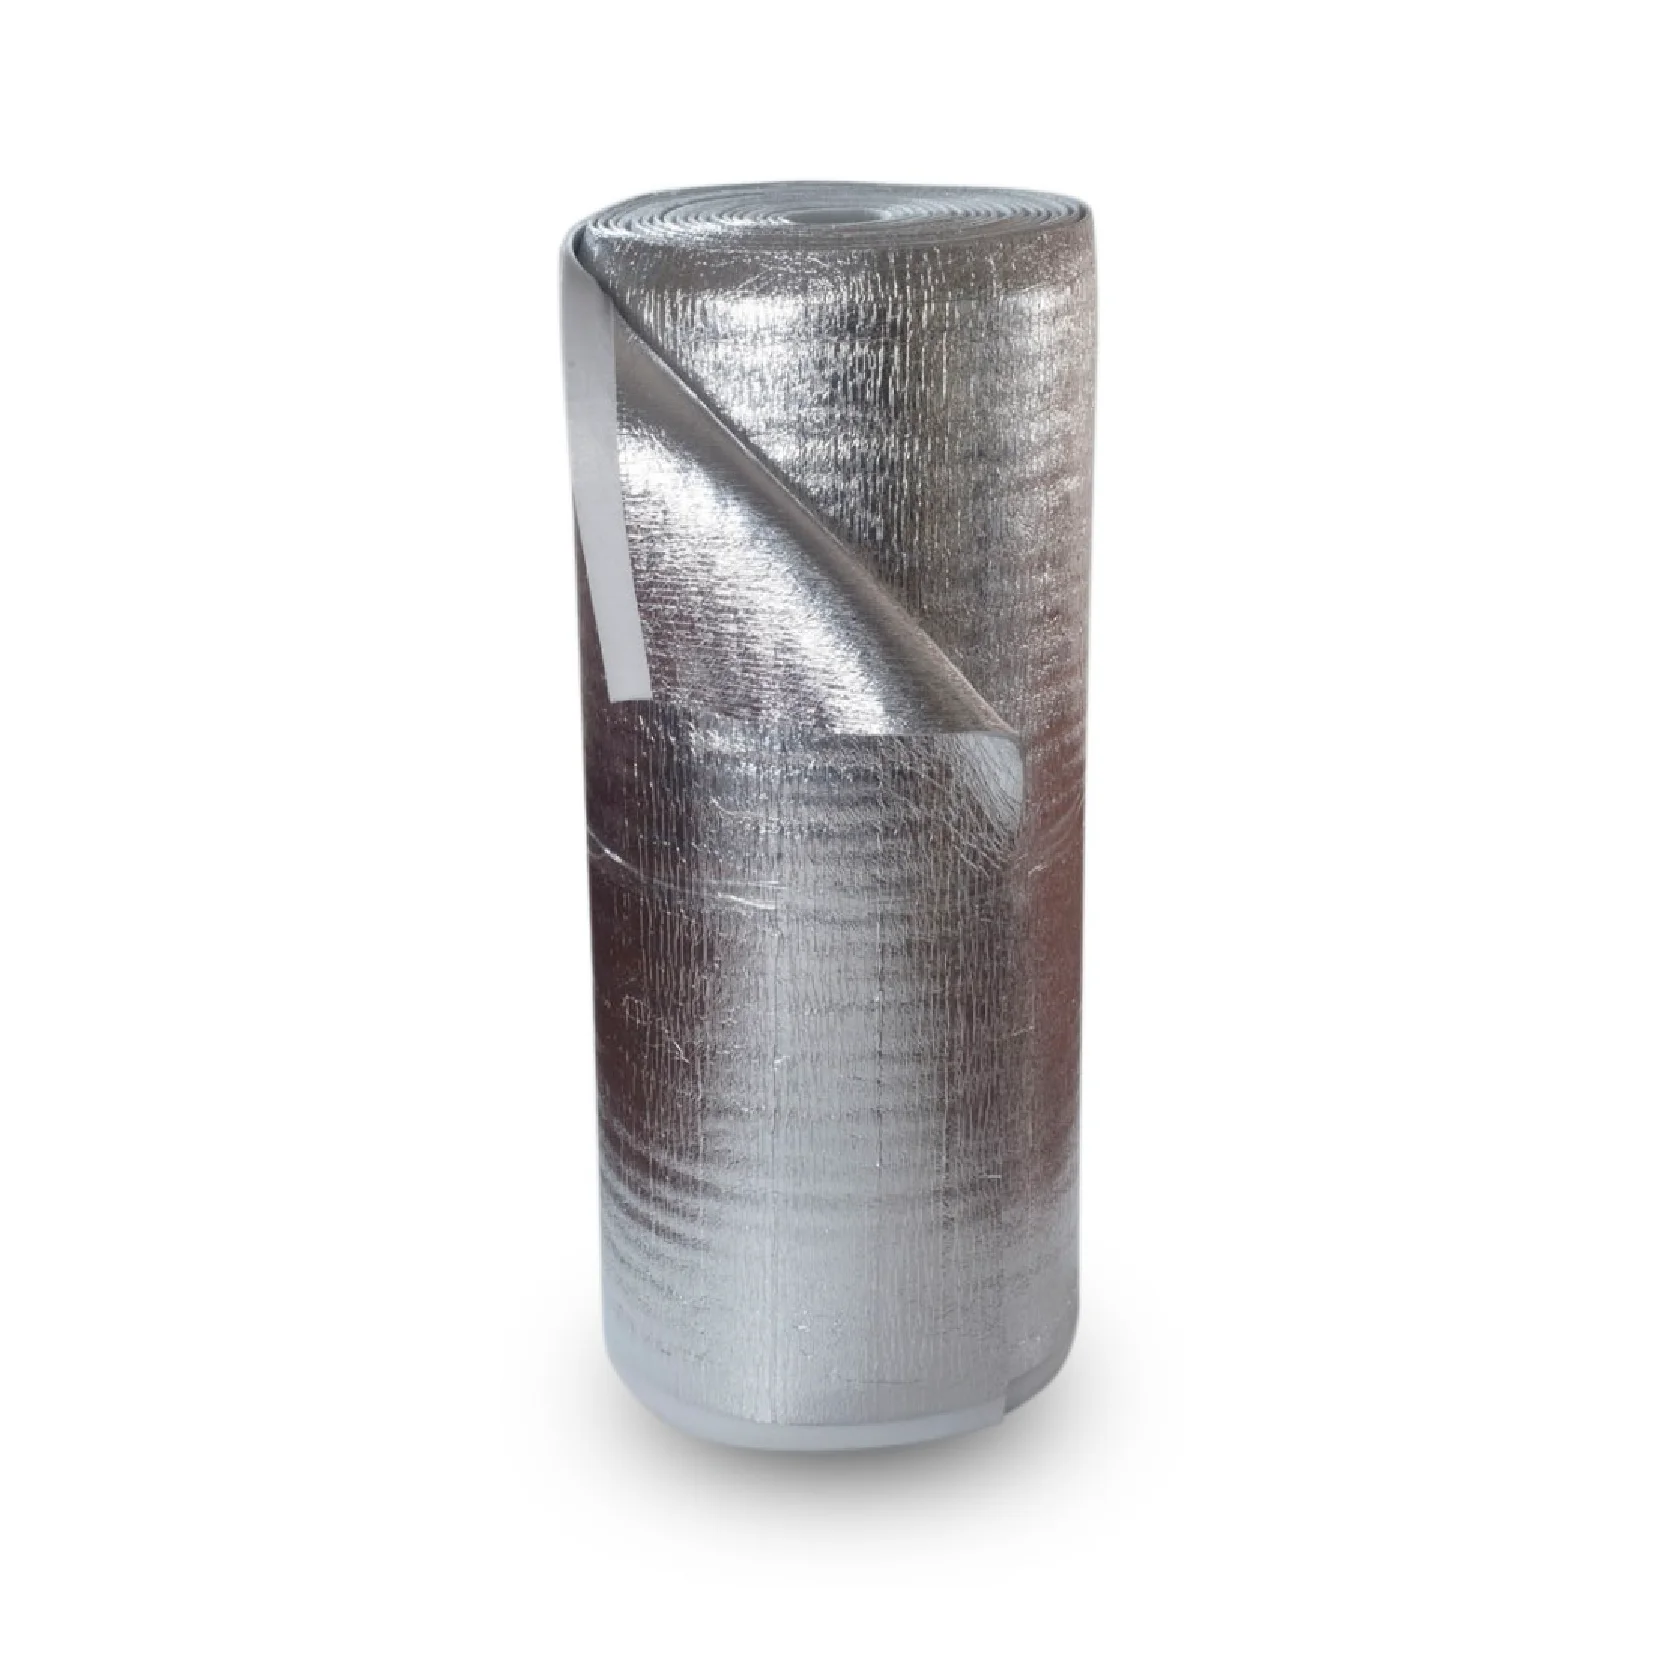 Aislamiento Termico Aluminio Reflexivo, Rollo Aislante Termico